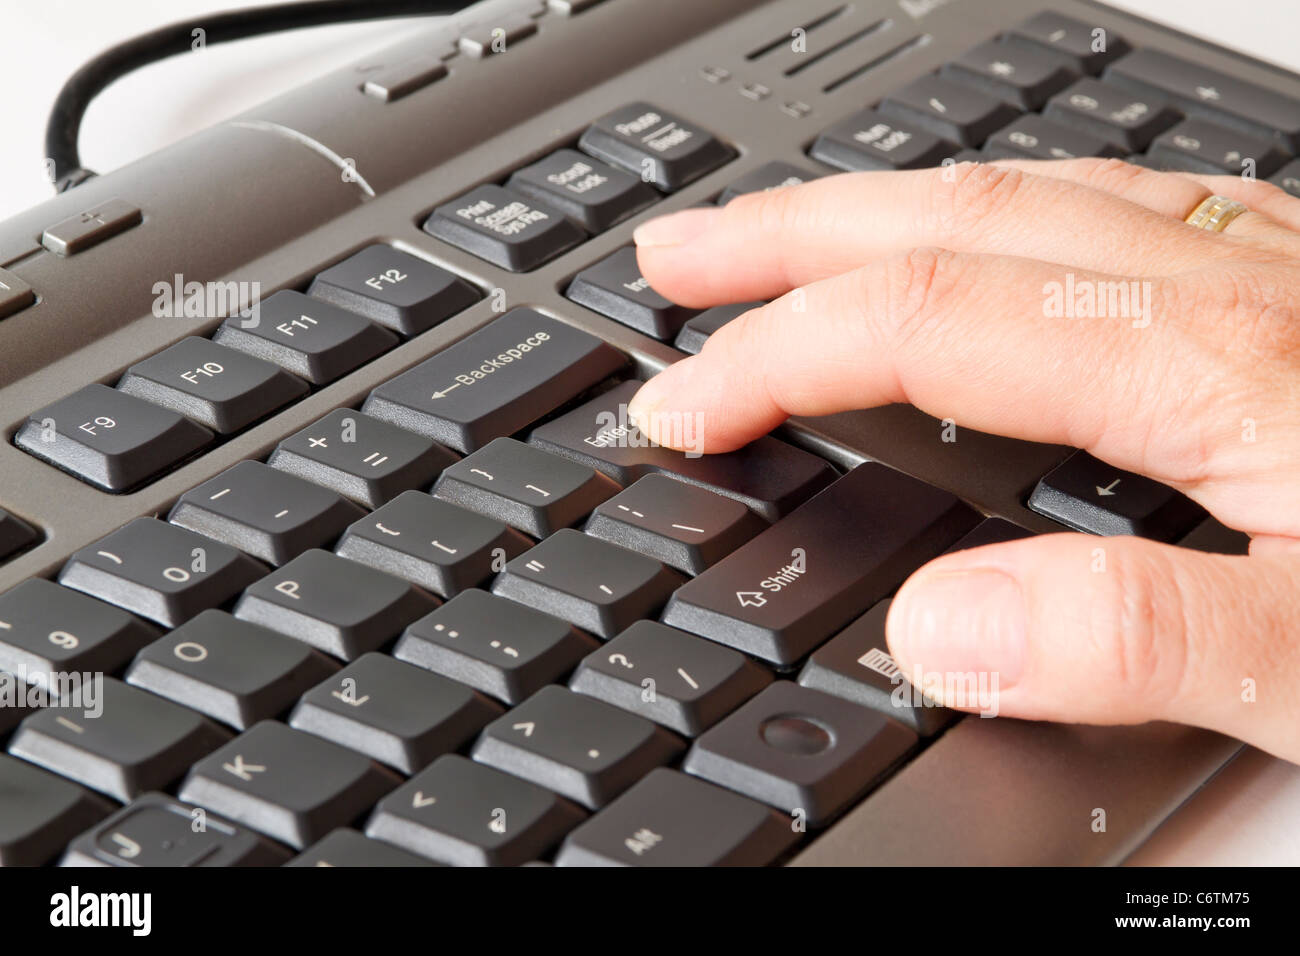 Mano pulsando la tecla Intro en el teclado Foto de stock